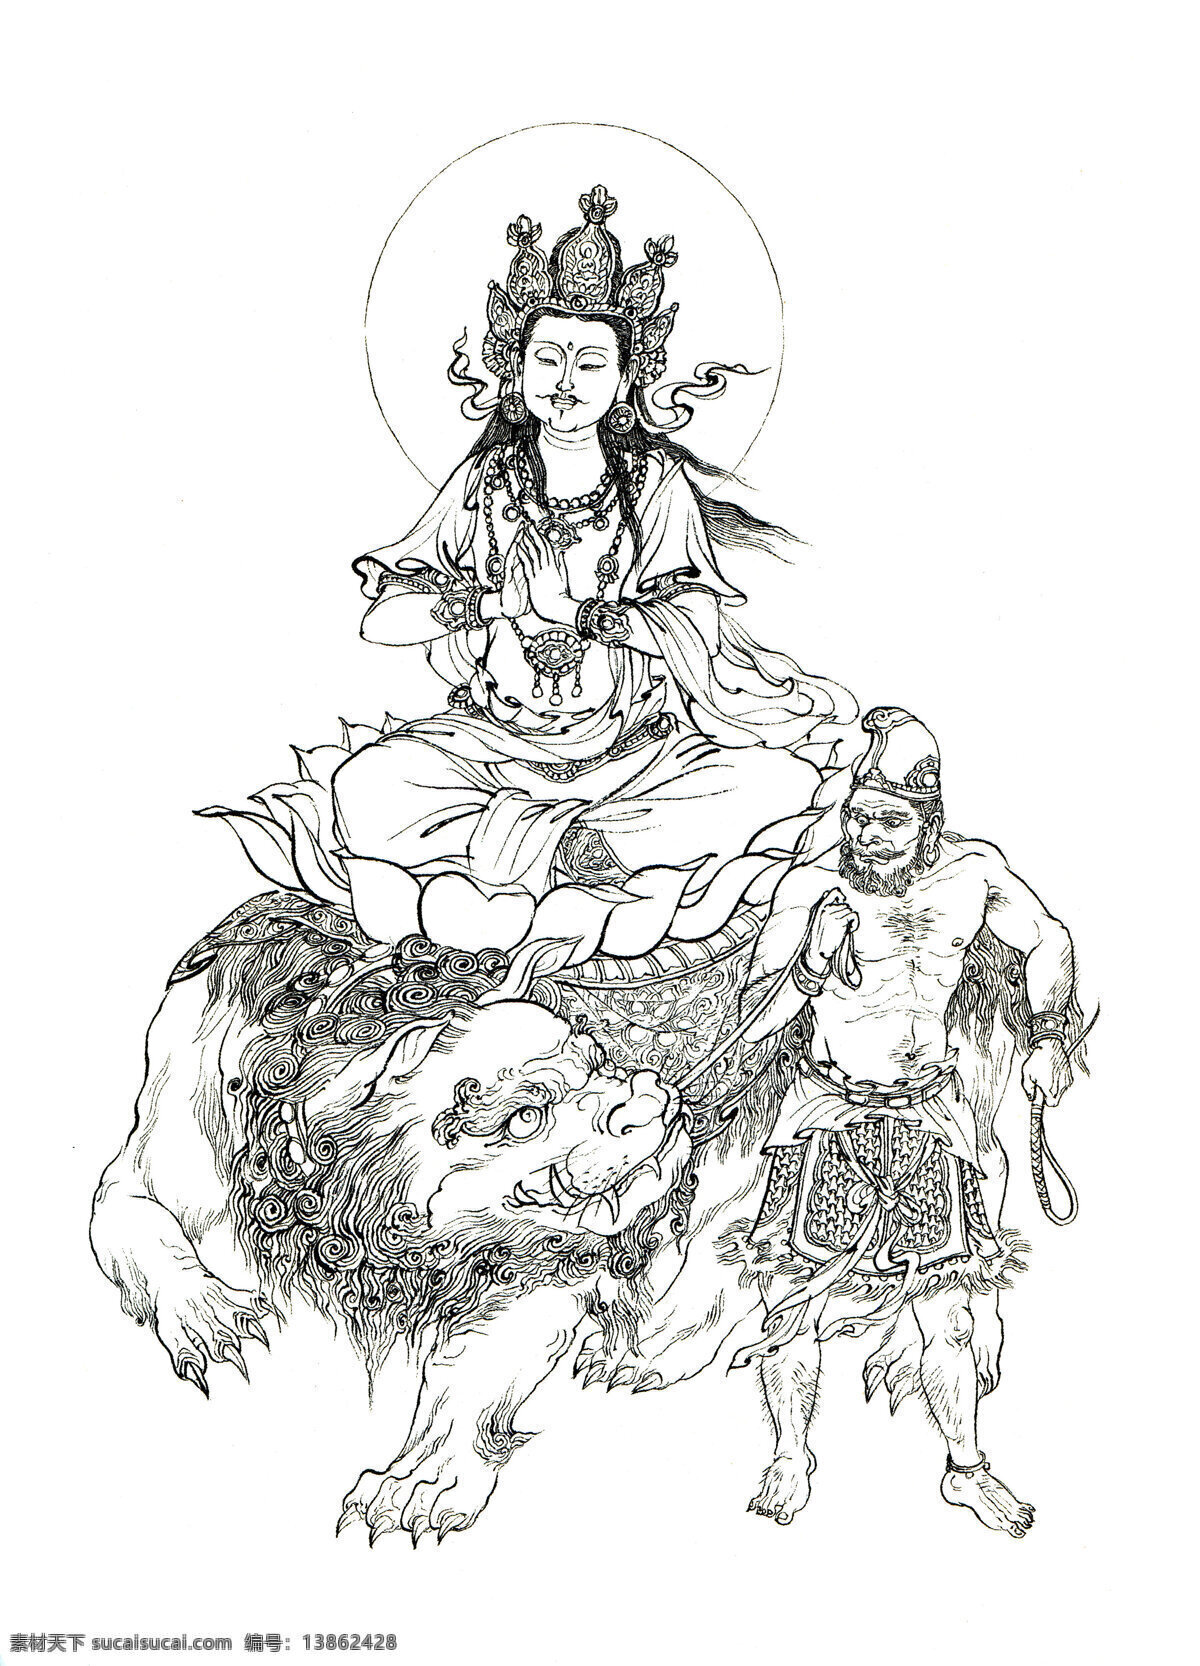 西游记 人物 白描 文殊菩萨 佛教 神话人物 李 云中 文化艺术 绘画书法